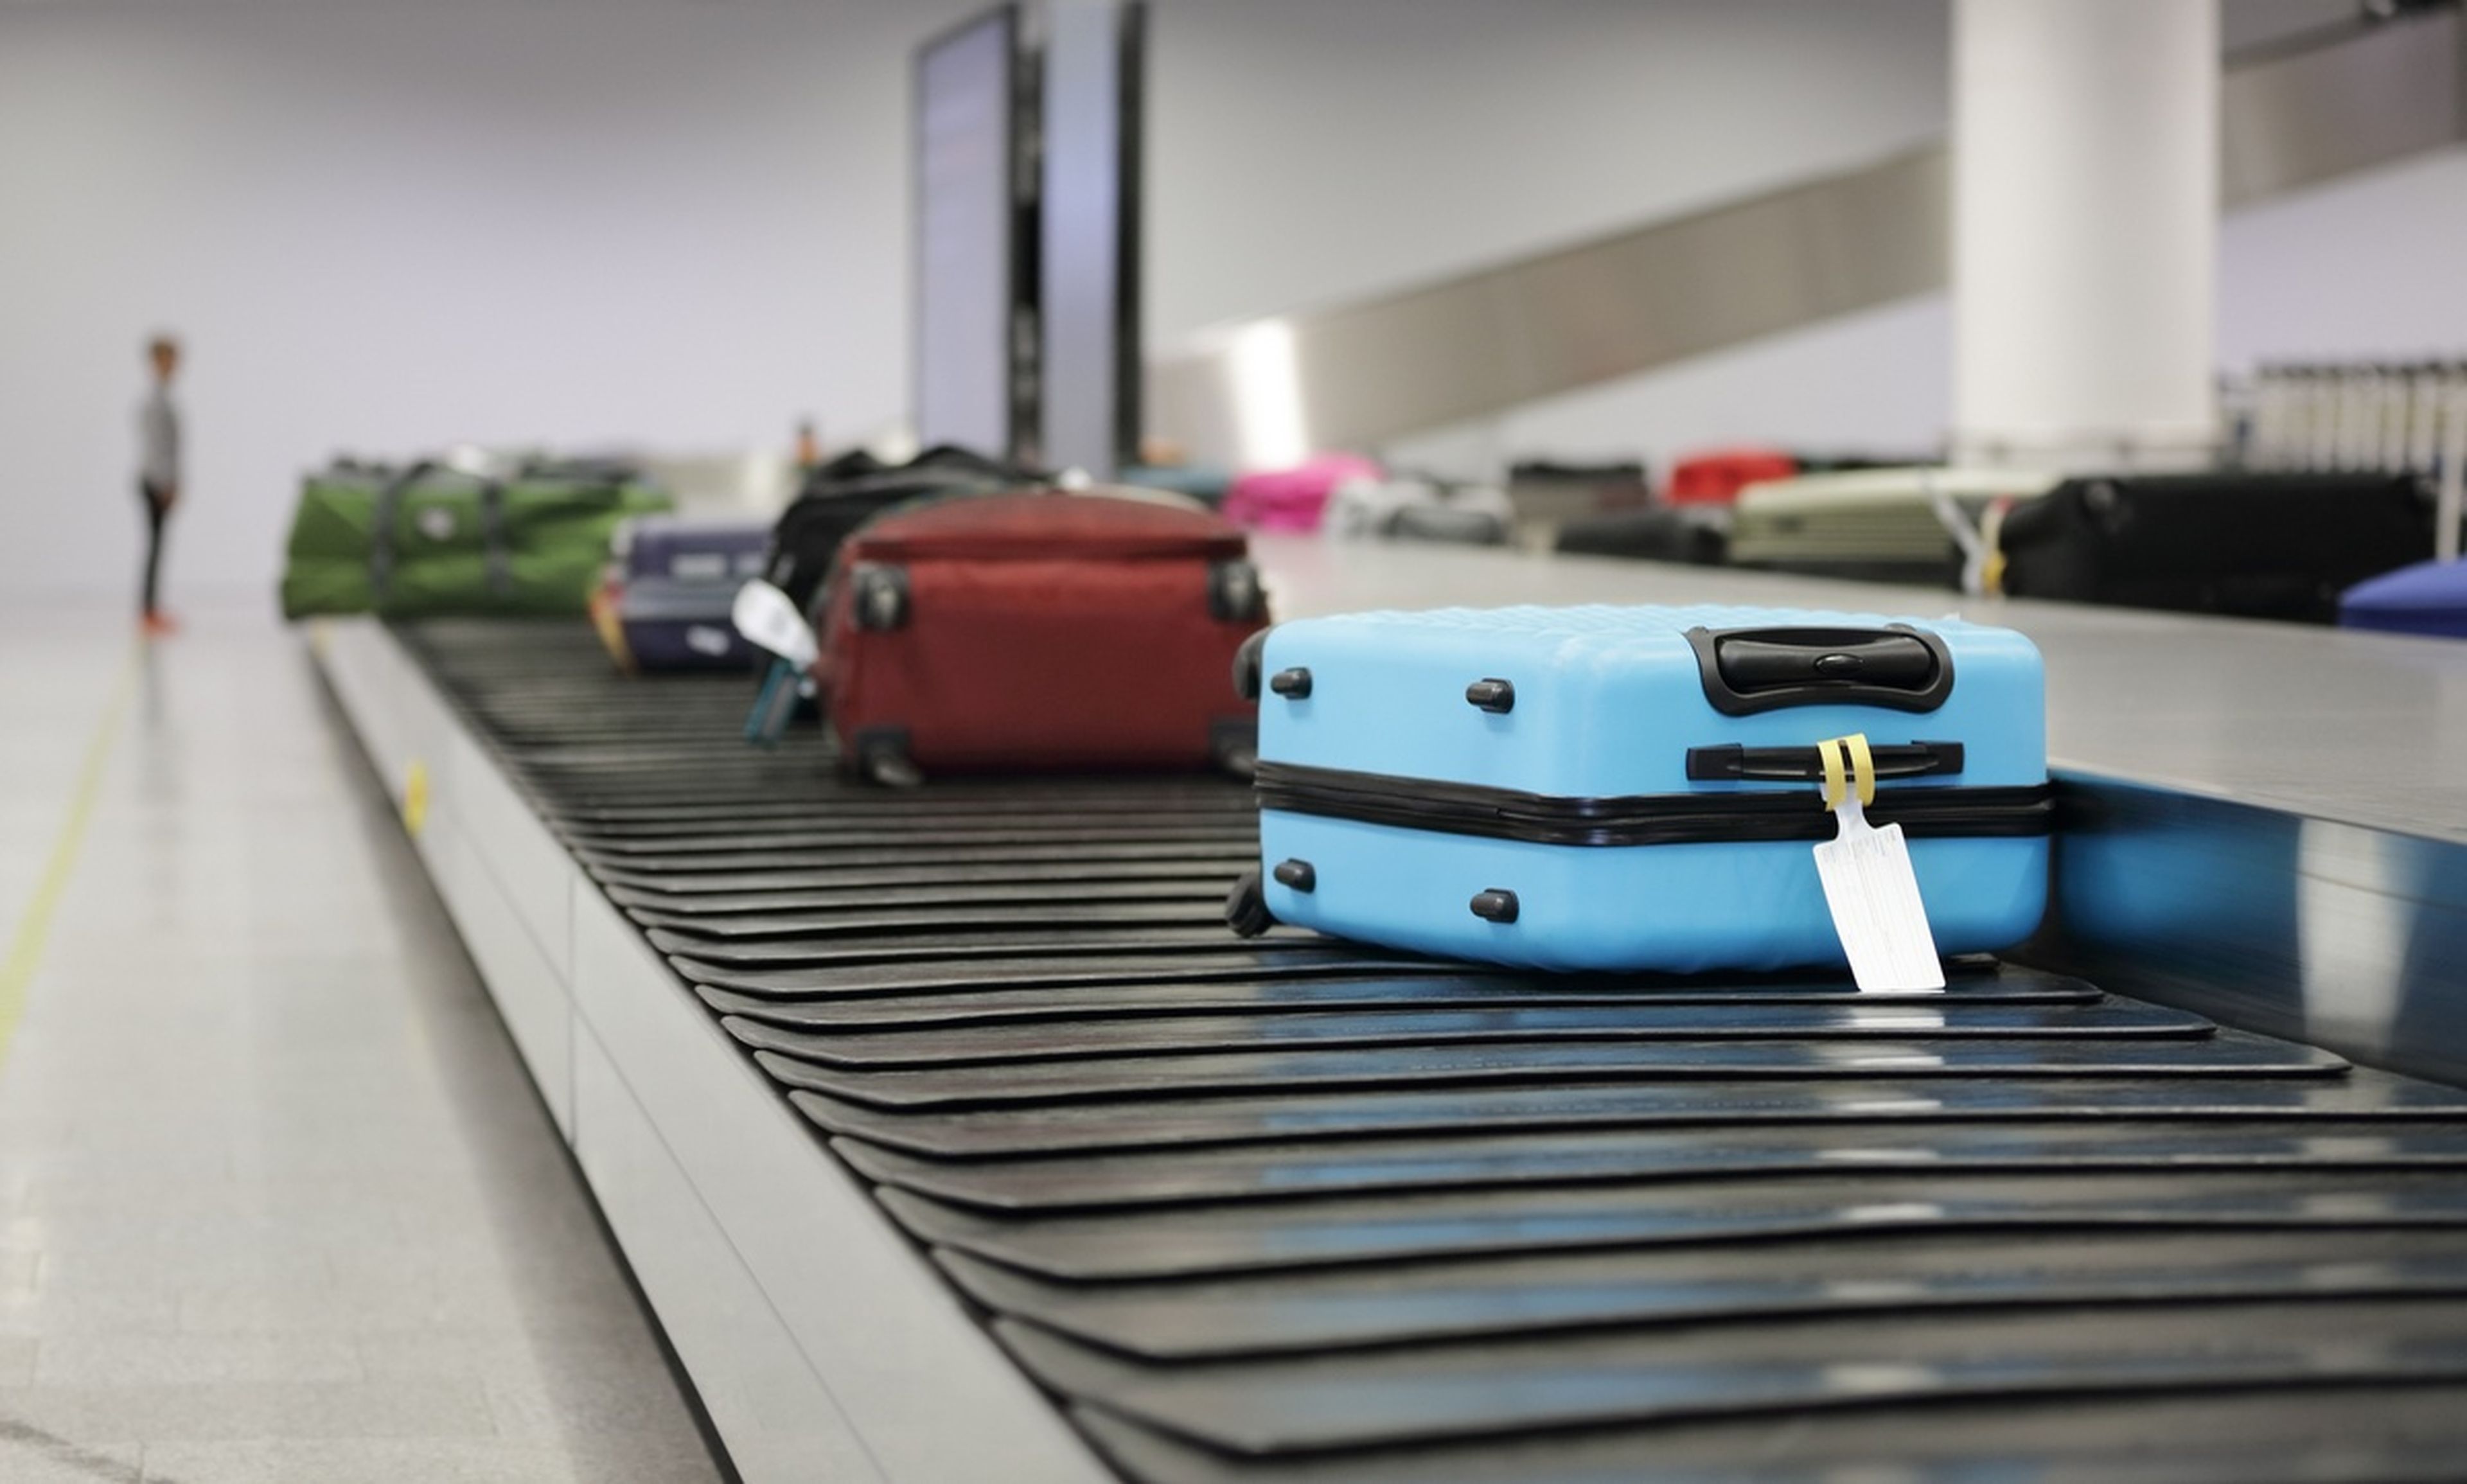 Trucos para que tu maleta sea la primera en la cinta de recogida del aeropuerto